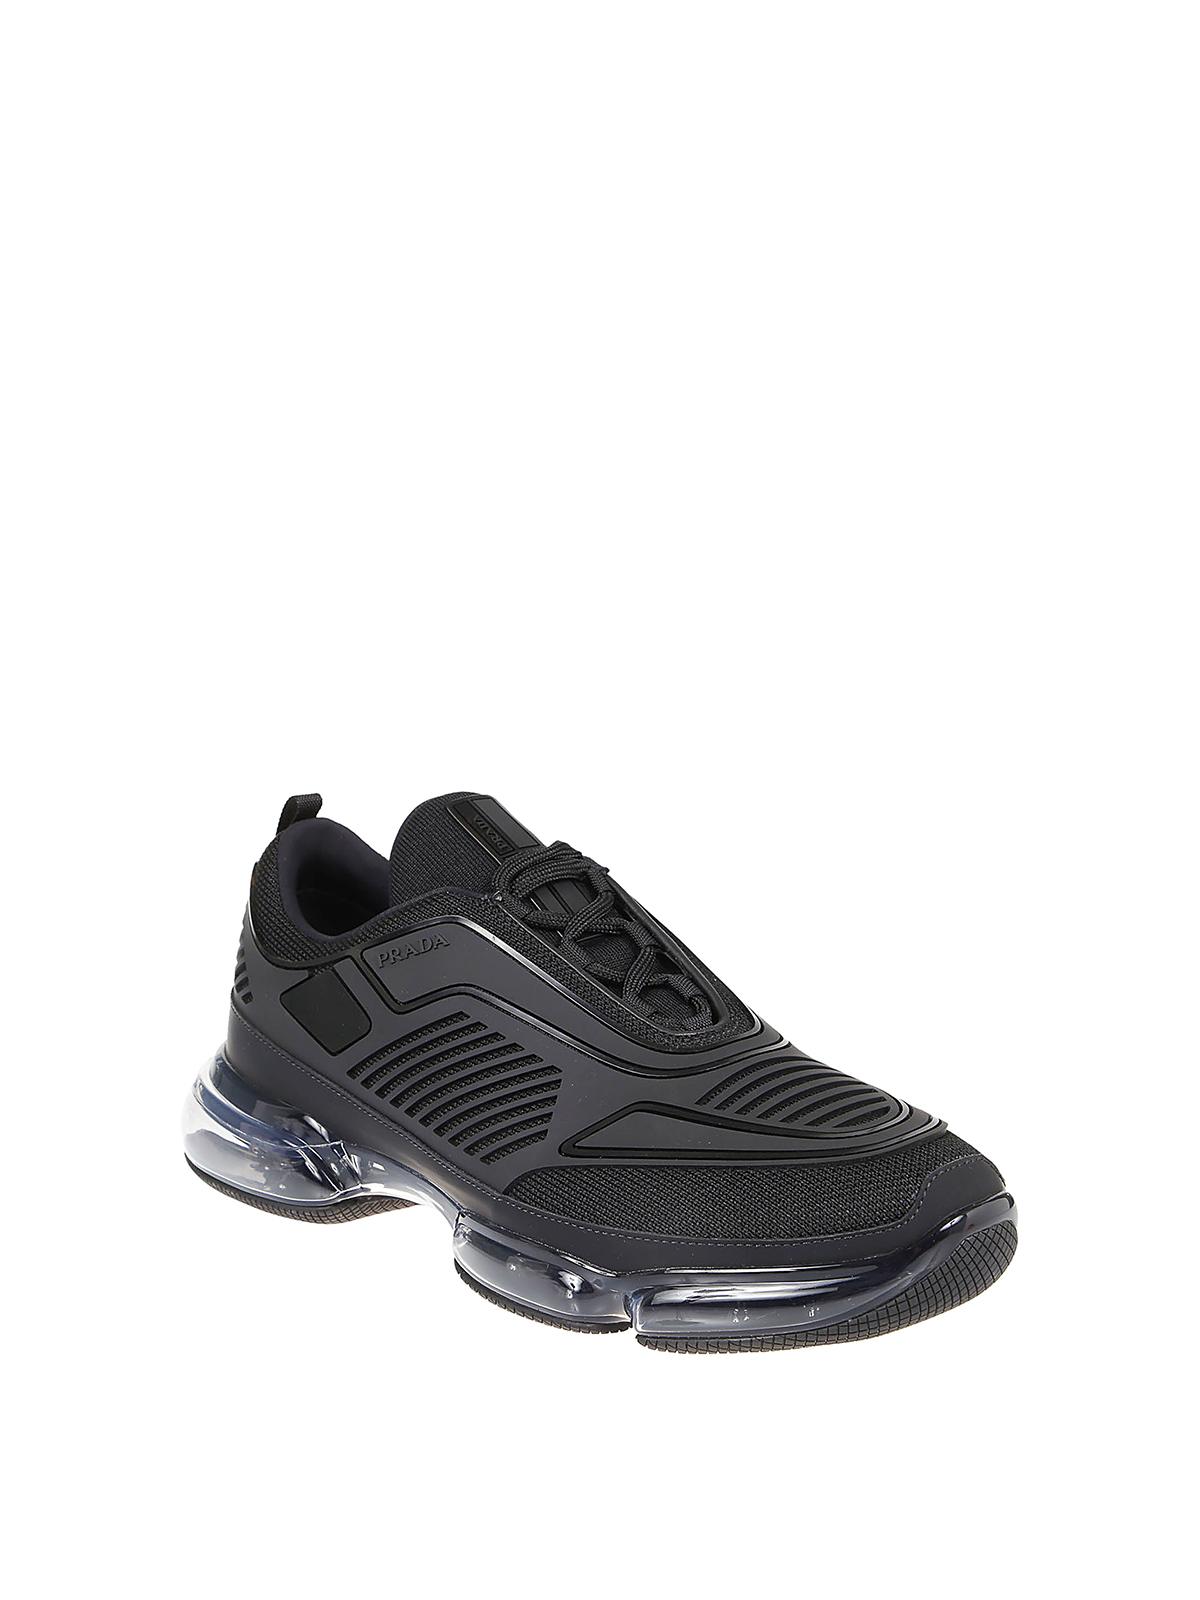 Prada Rubber Cloudbust Air Sneakers in Black for Men - Lyst